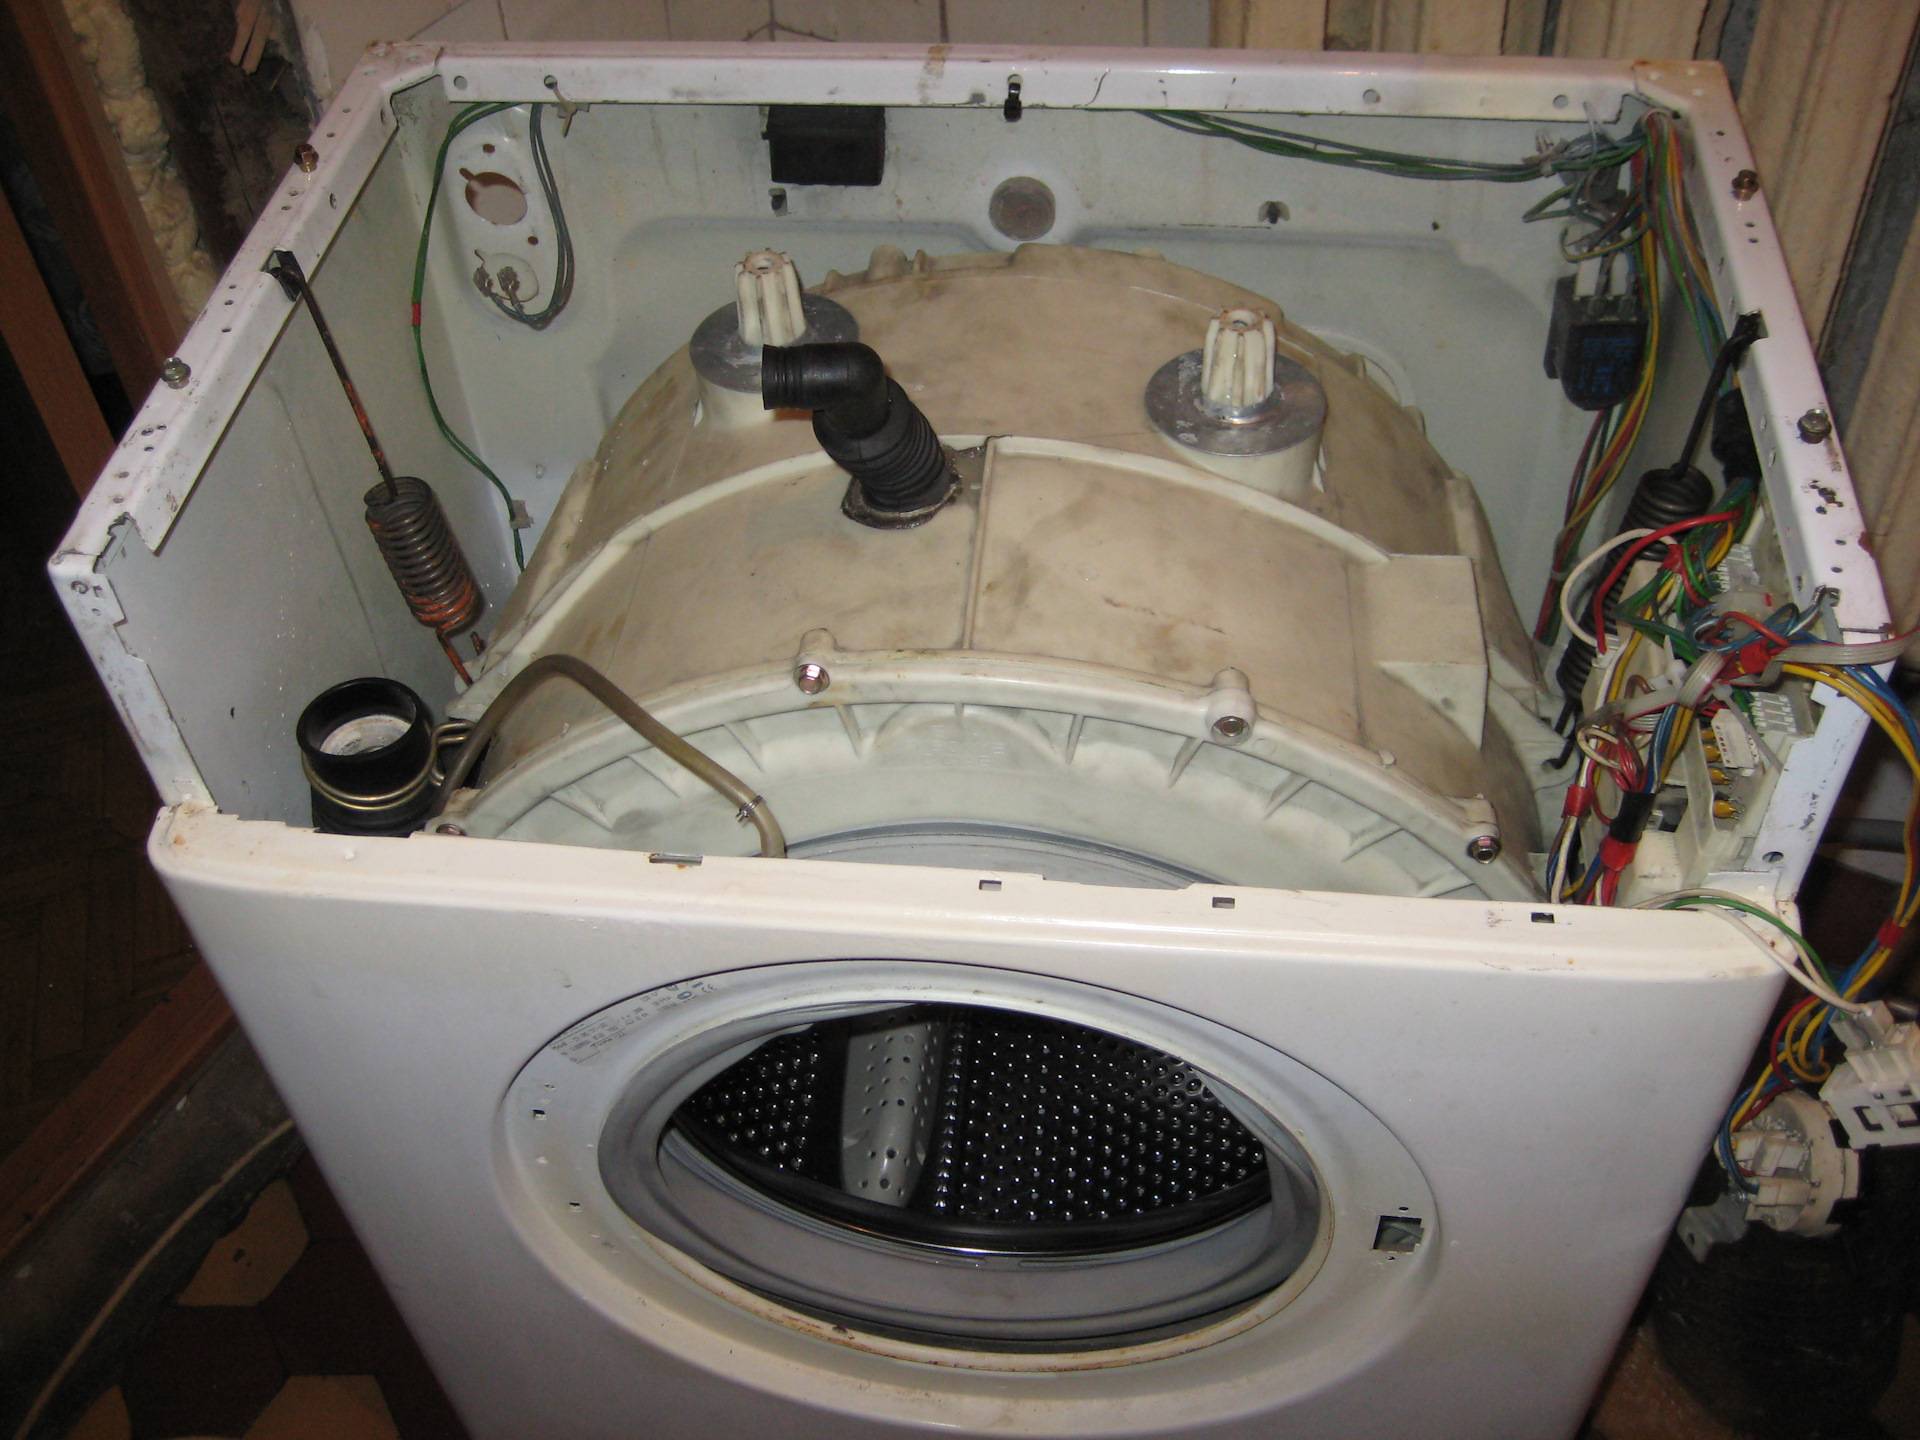 Ремонт стиральных машин samsung